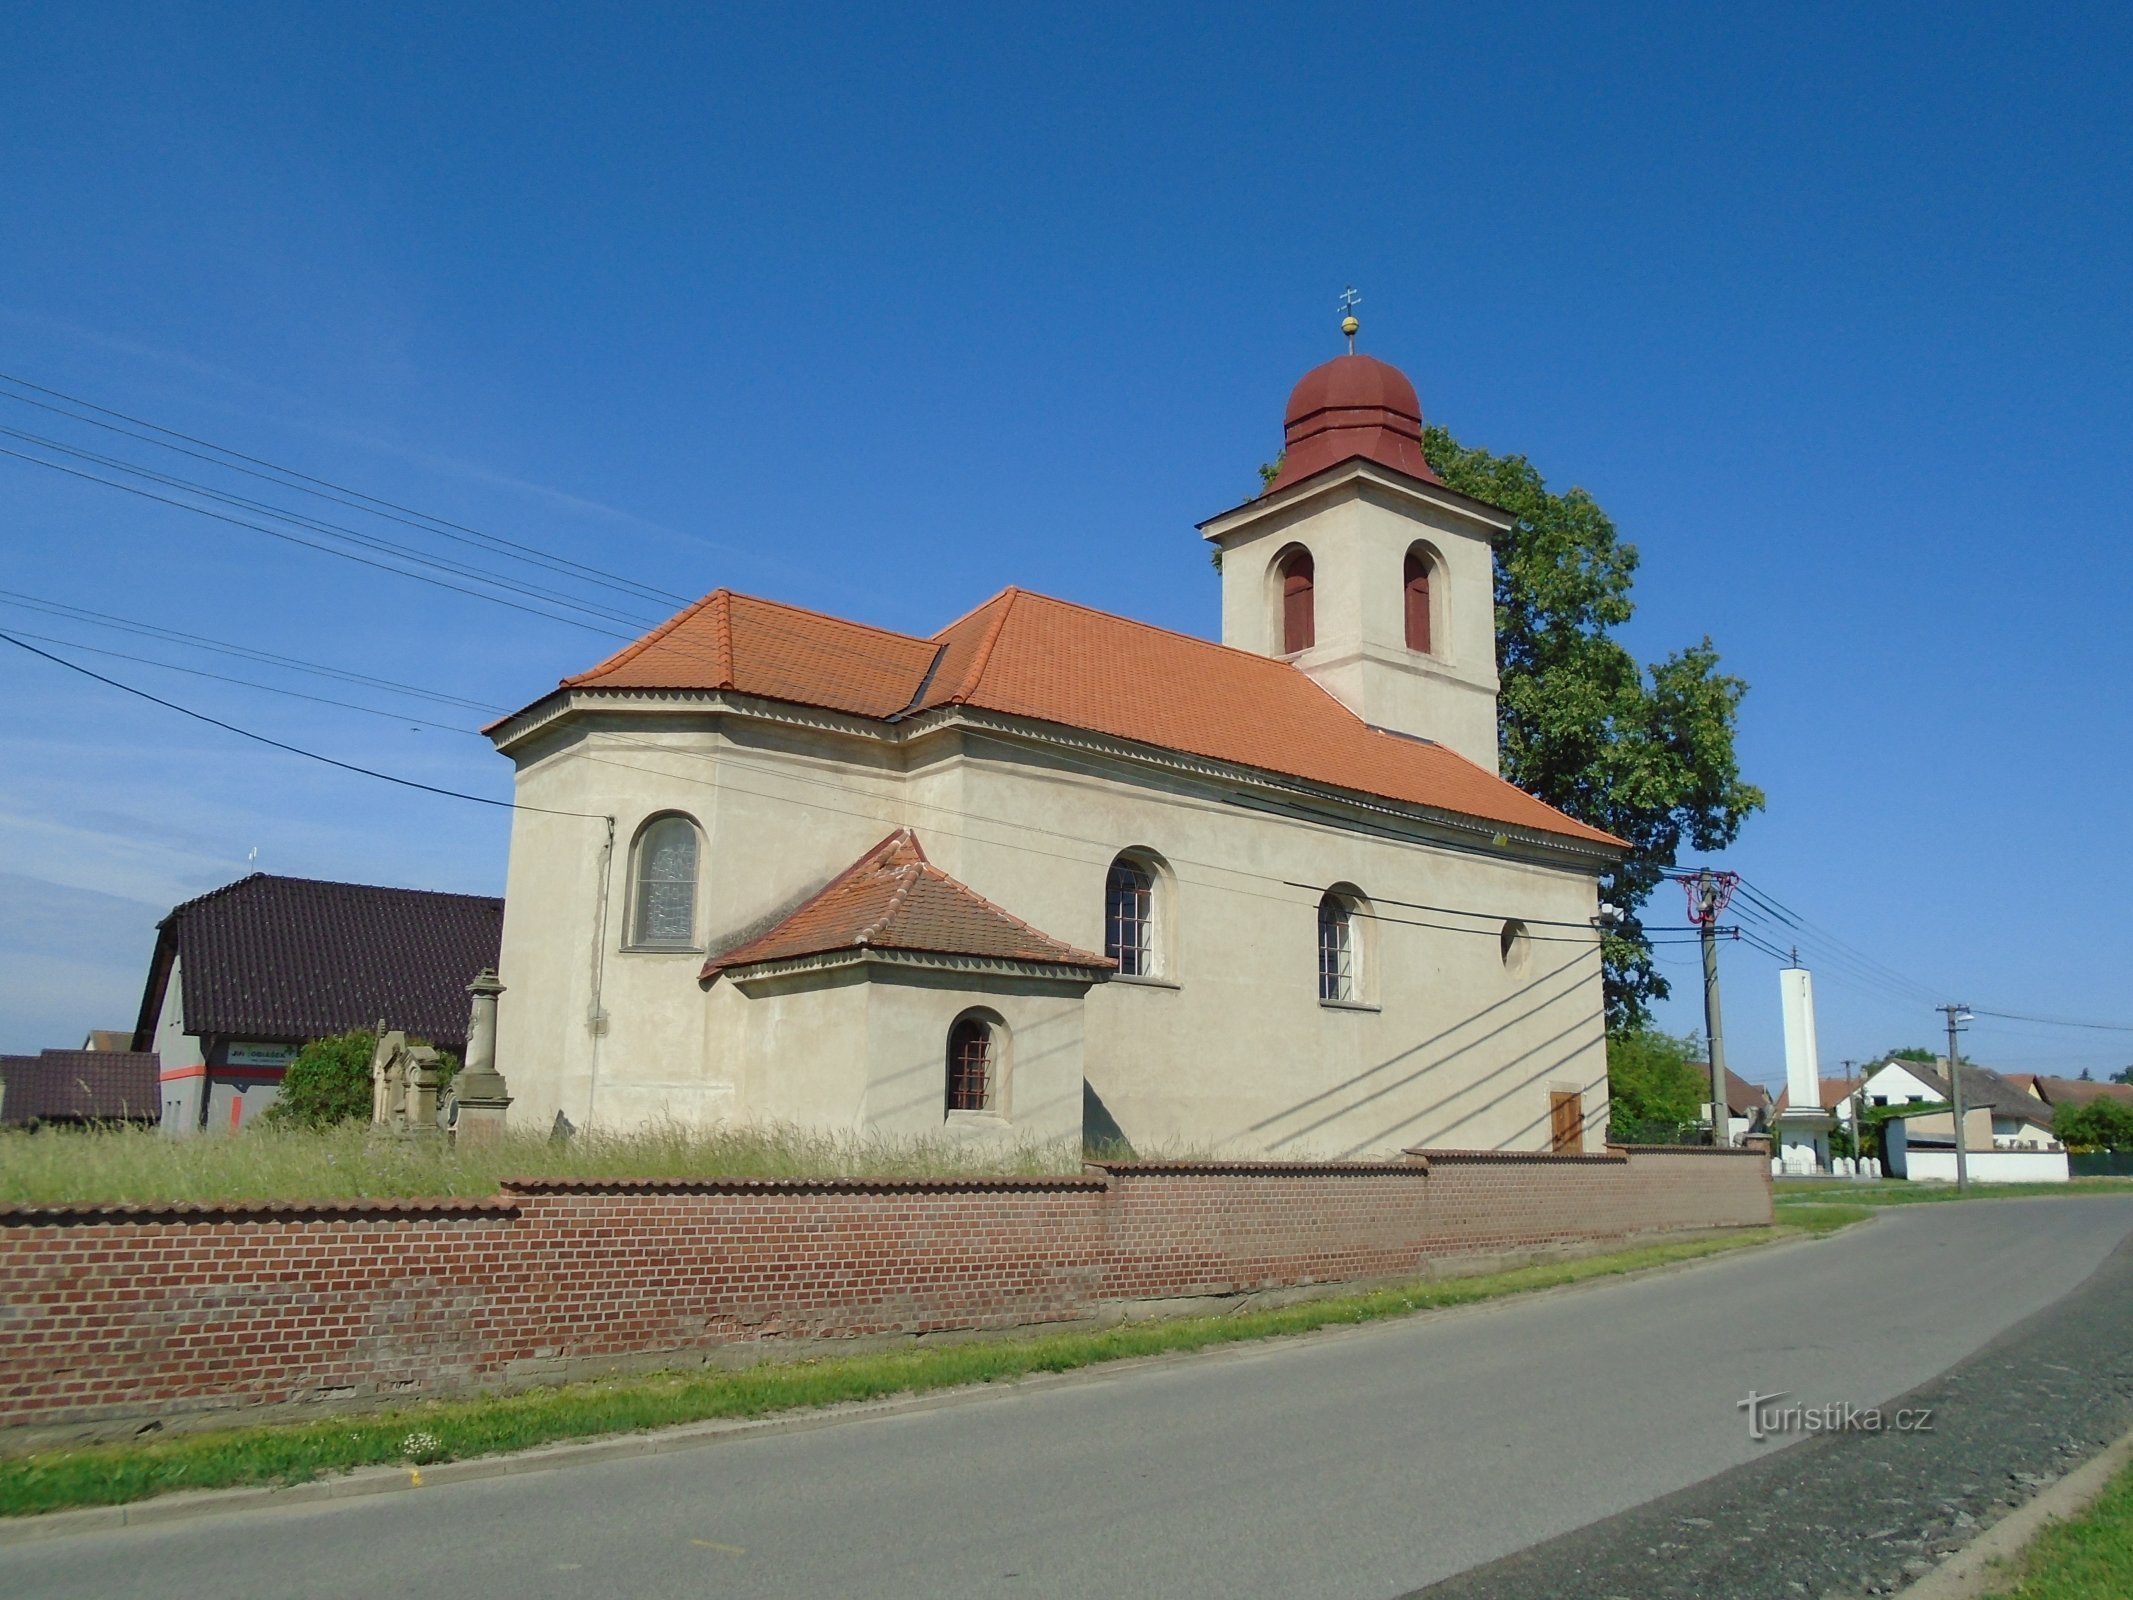 Iglesia de la Santísima Trinidad (Praskačka, 25.5.2018/XNUMX/XNUMX)